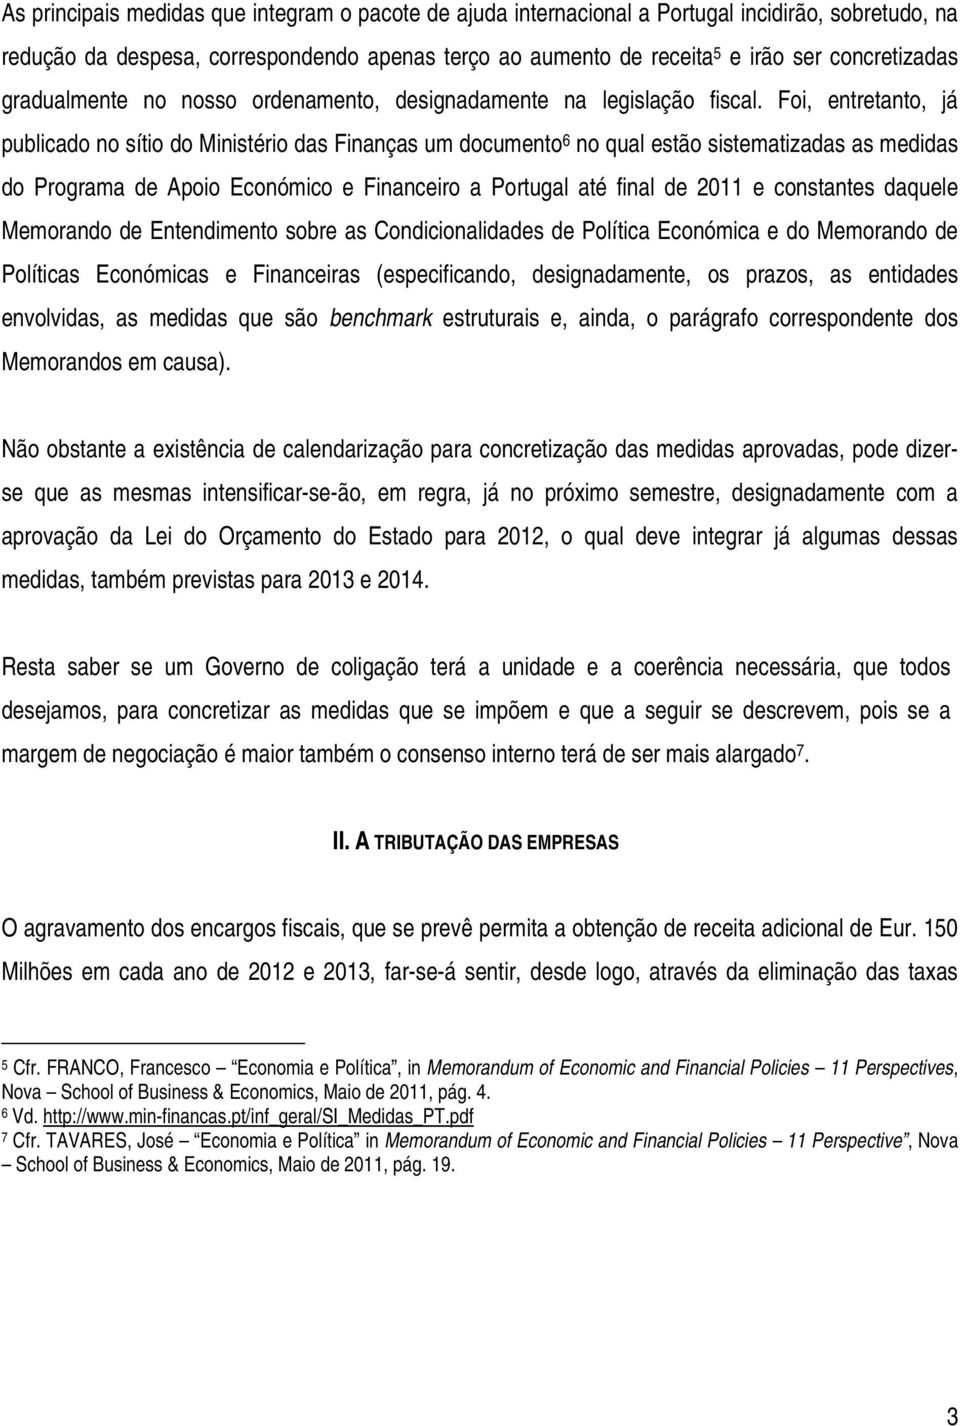 Foi, entretanto, já publicado no sítio do Ministério das Finanças um documento 6 no qual estão sistematizadas as medidas do Programa de Apoio Económico e Financeiro a Portugal até final de 2011 e